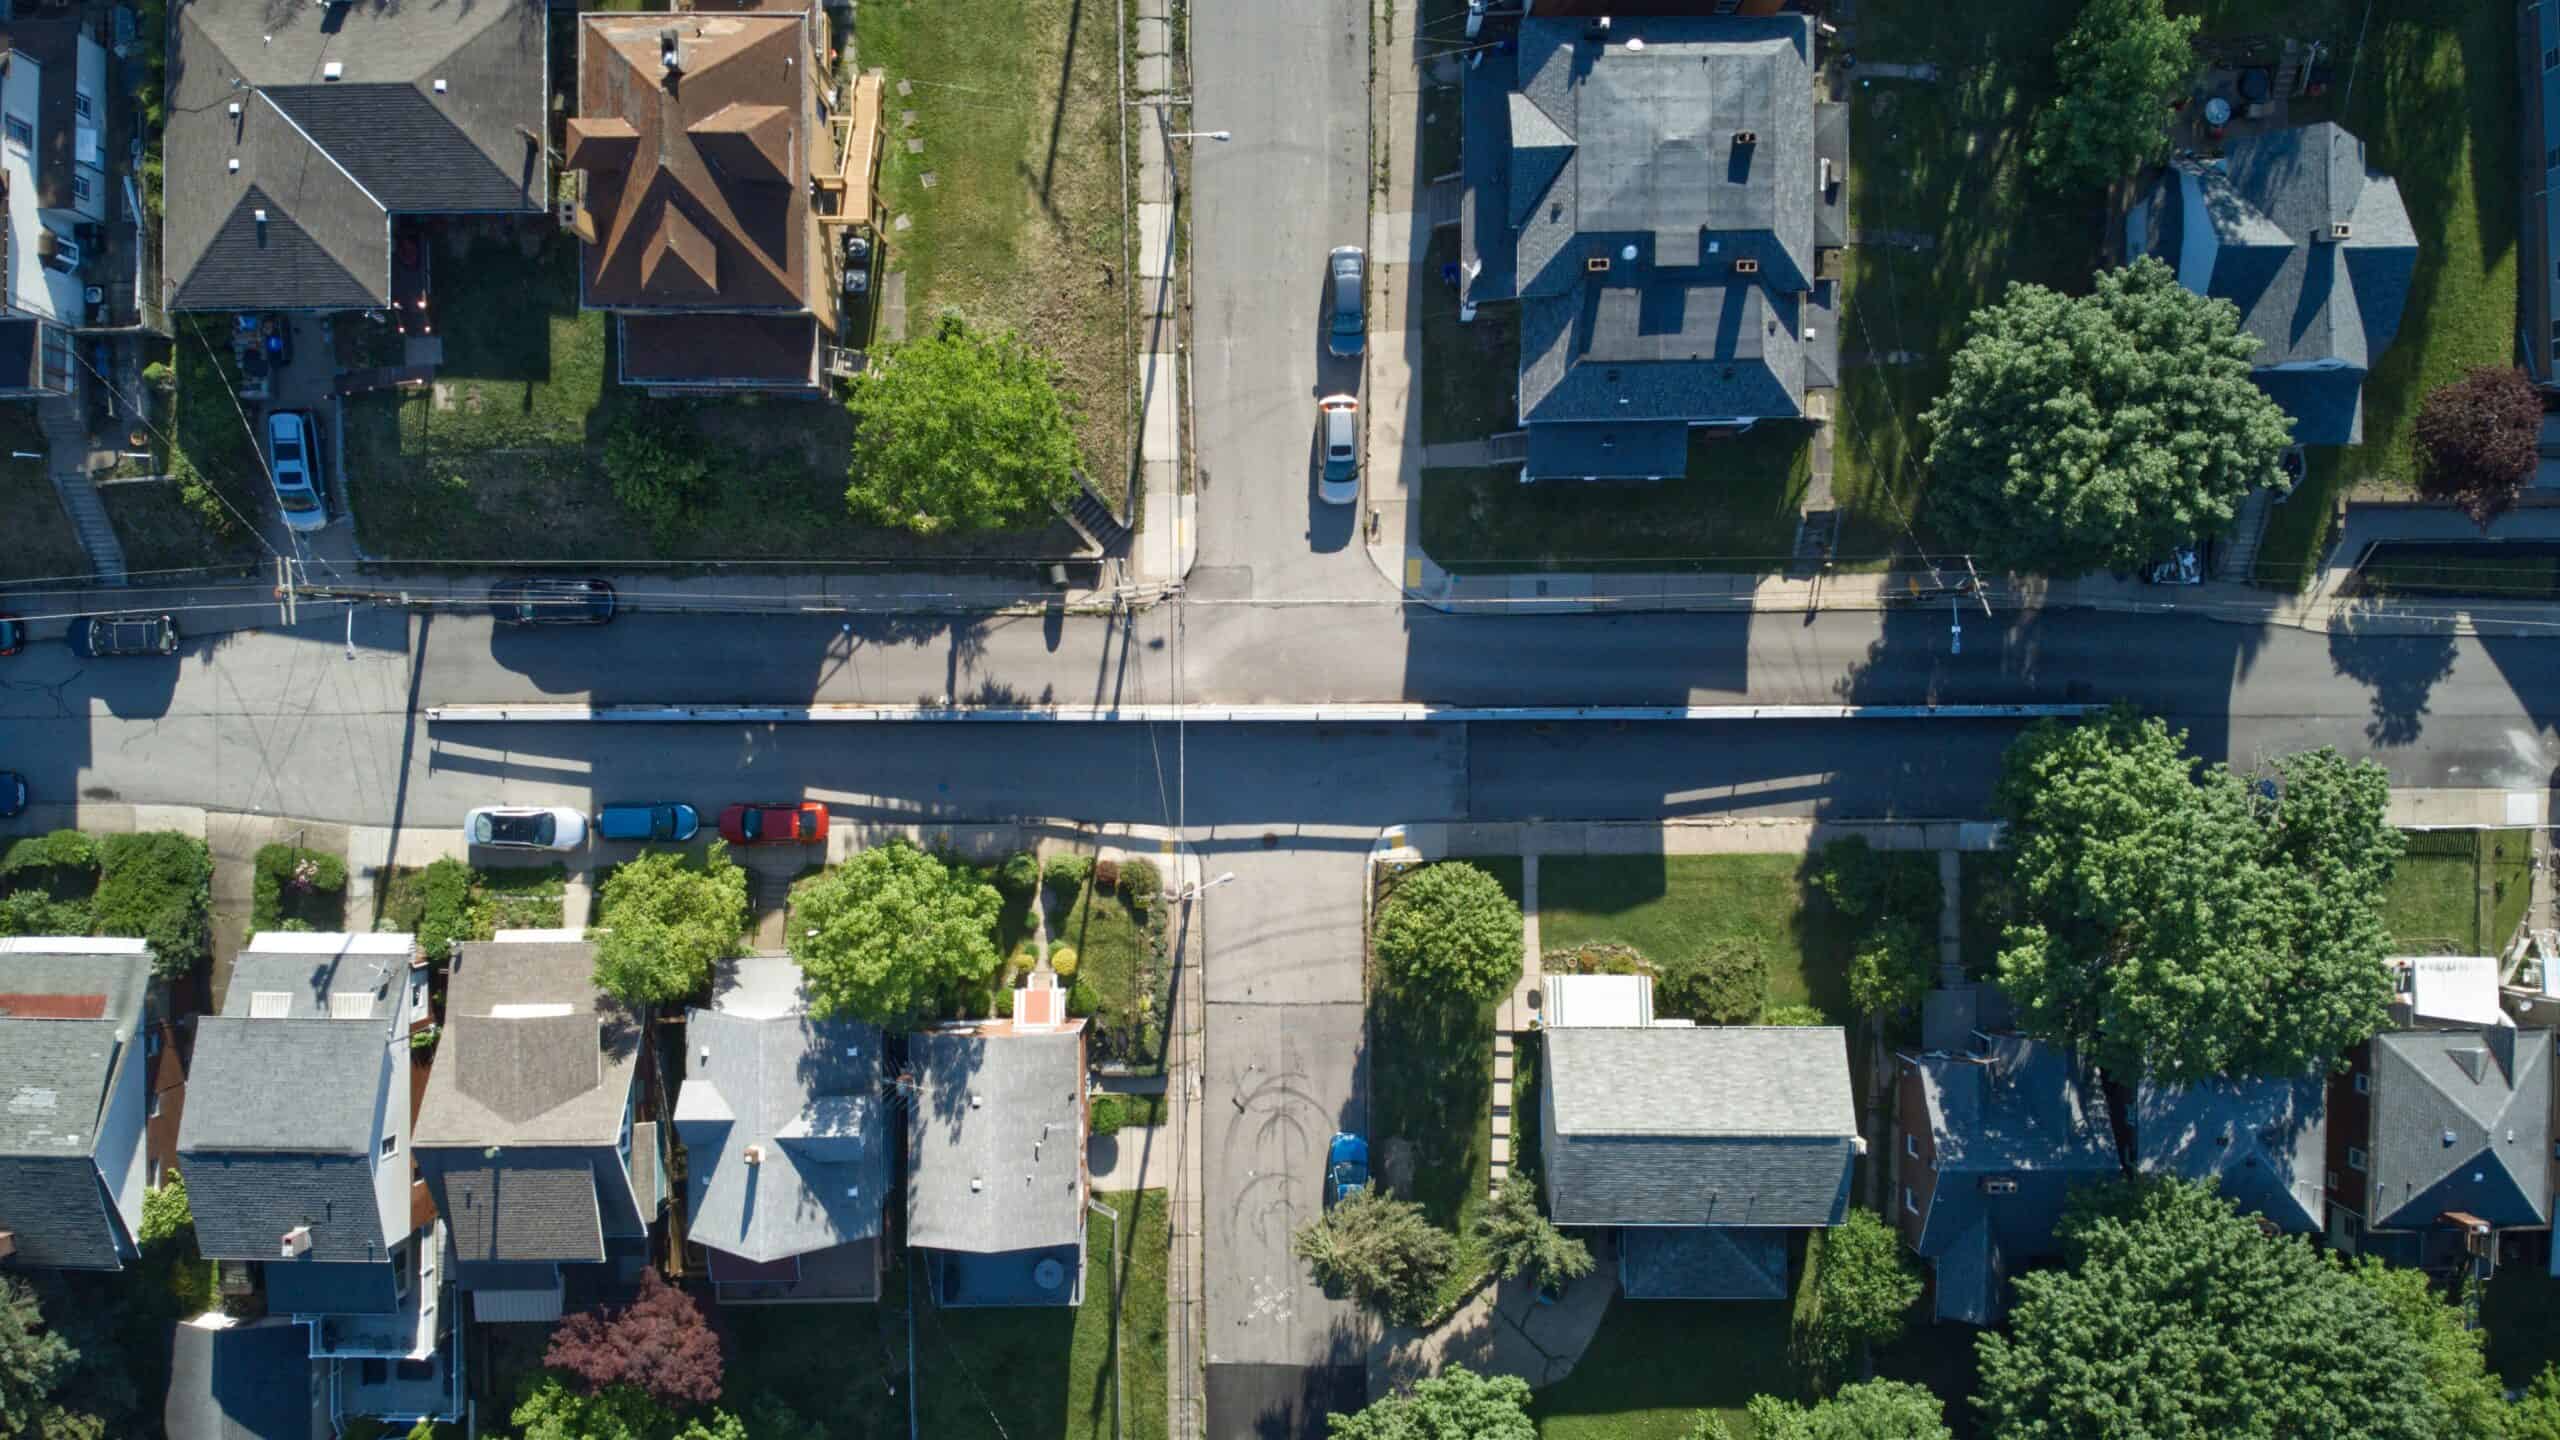 Overhead image of houses in a neighborhood